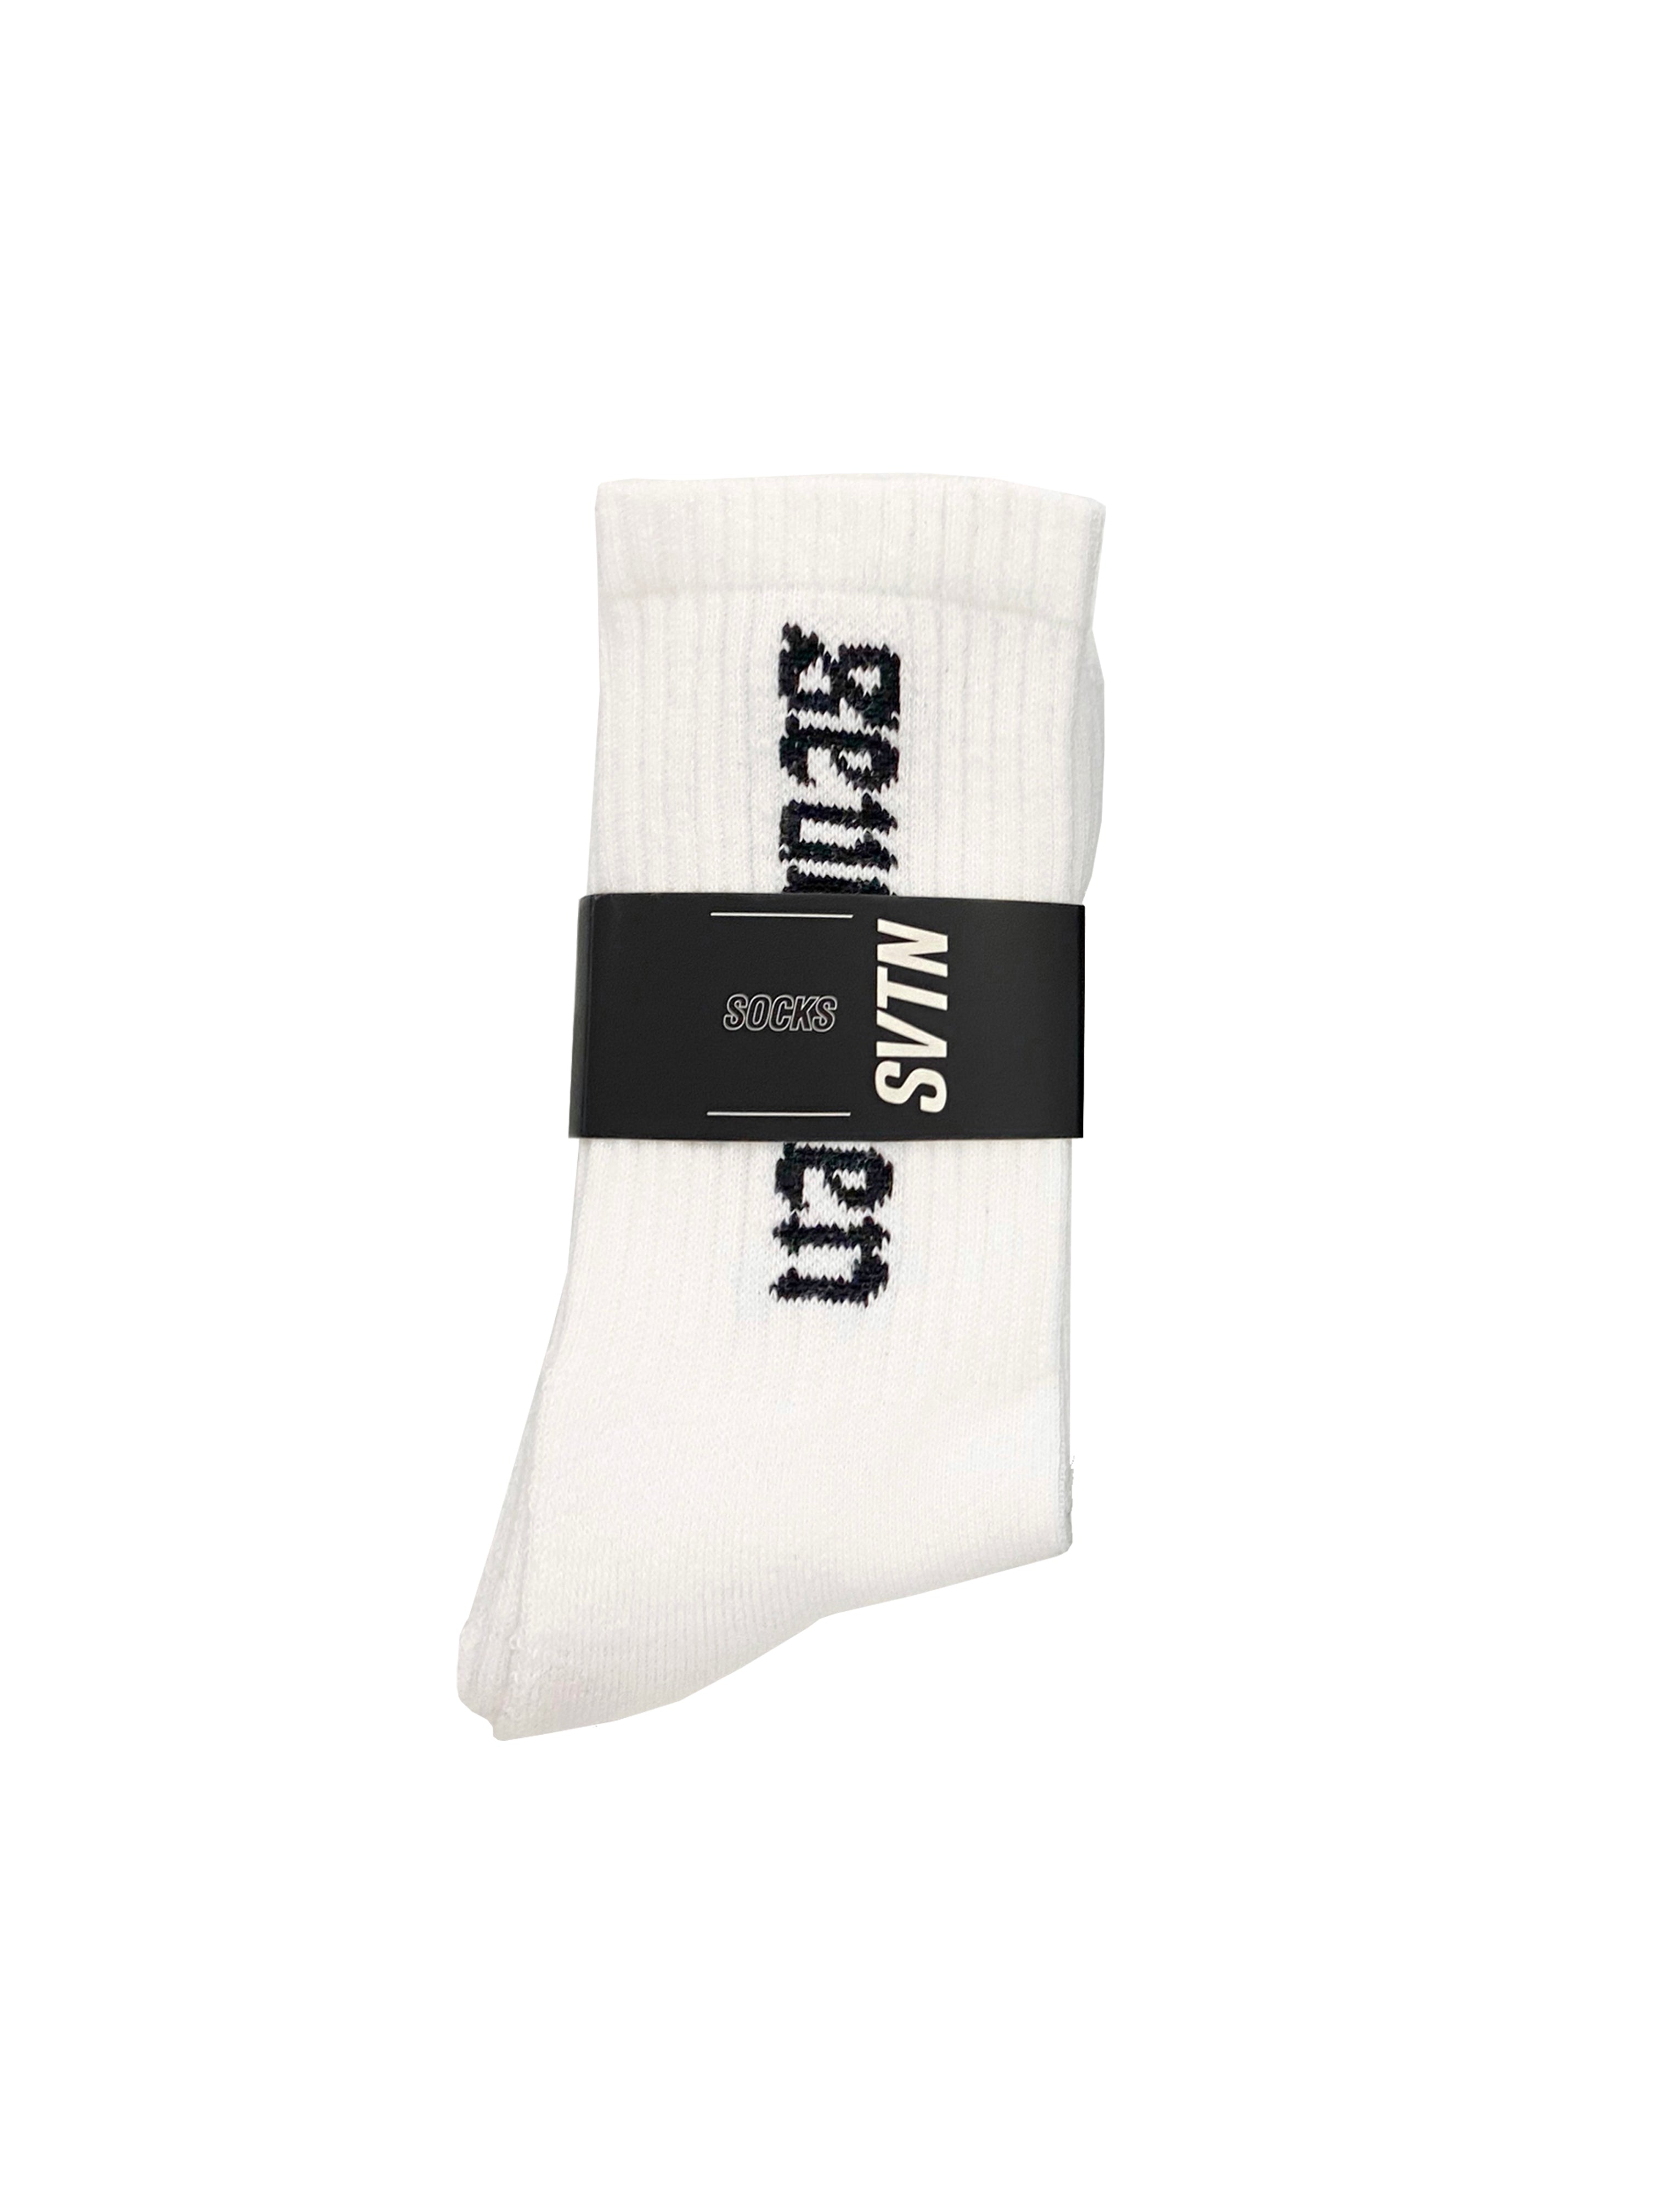 Seventeen white socks